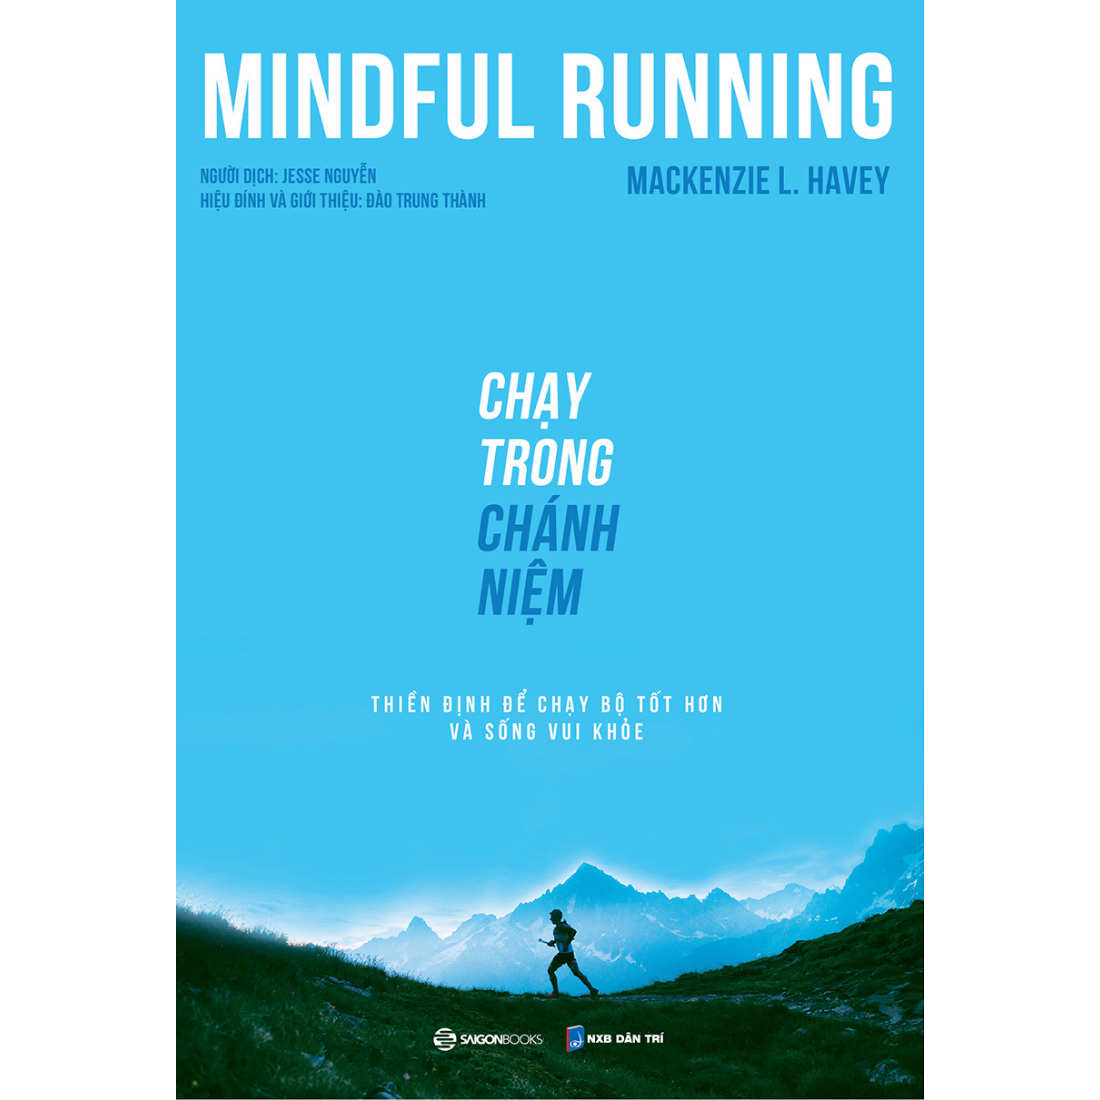 Chạy trong chánh niệm (Mindful Running) - Tác giả Mackenzie L. Havey